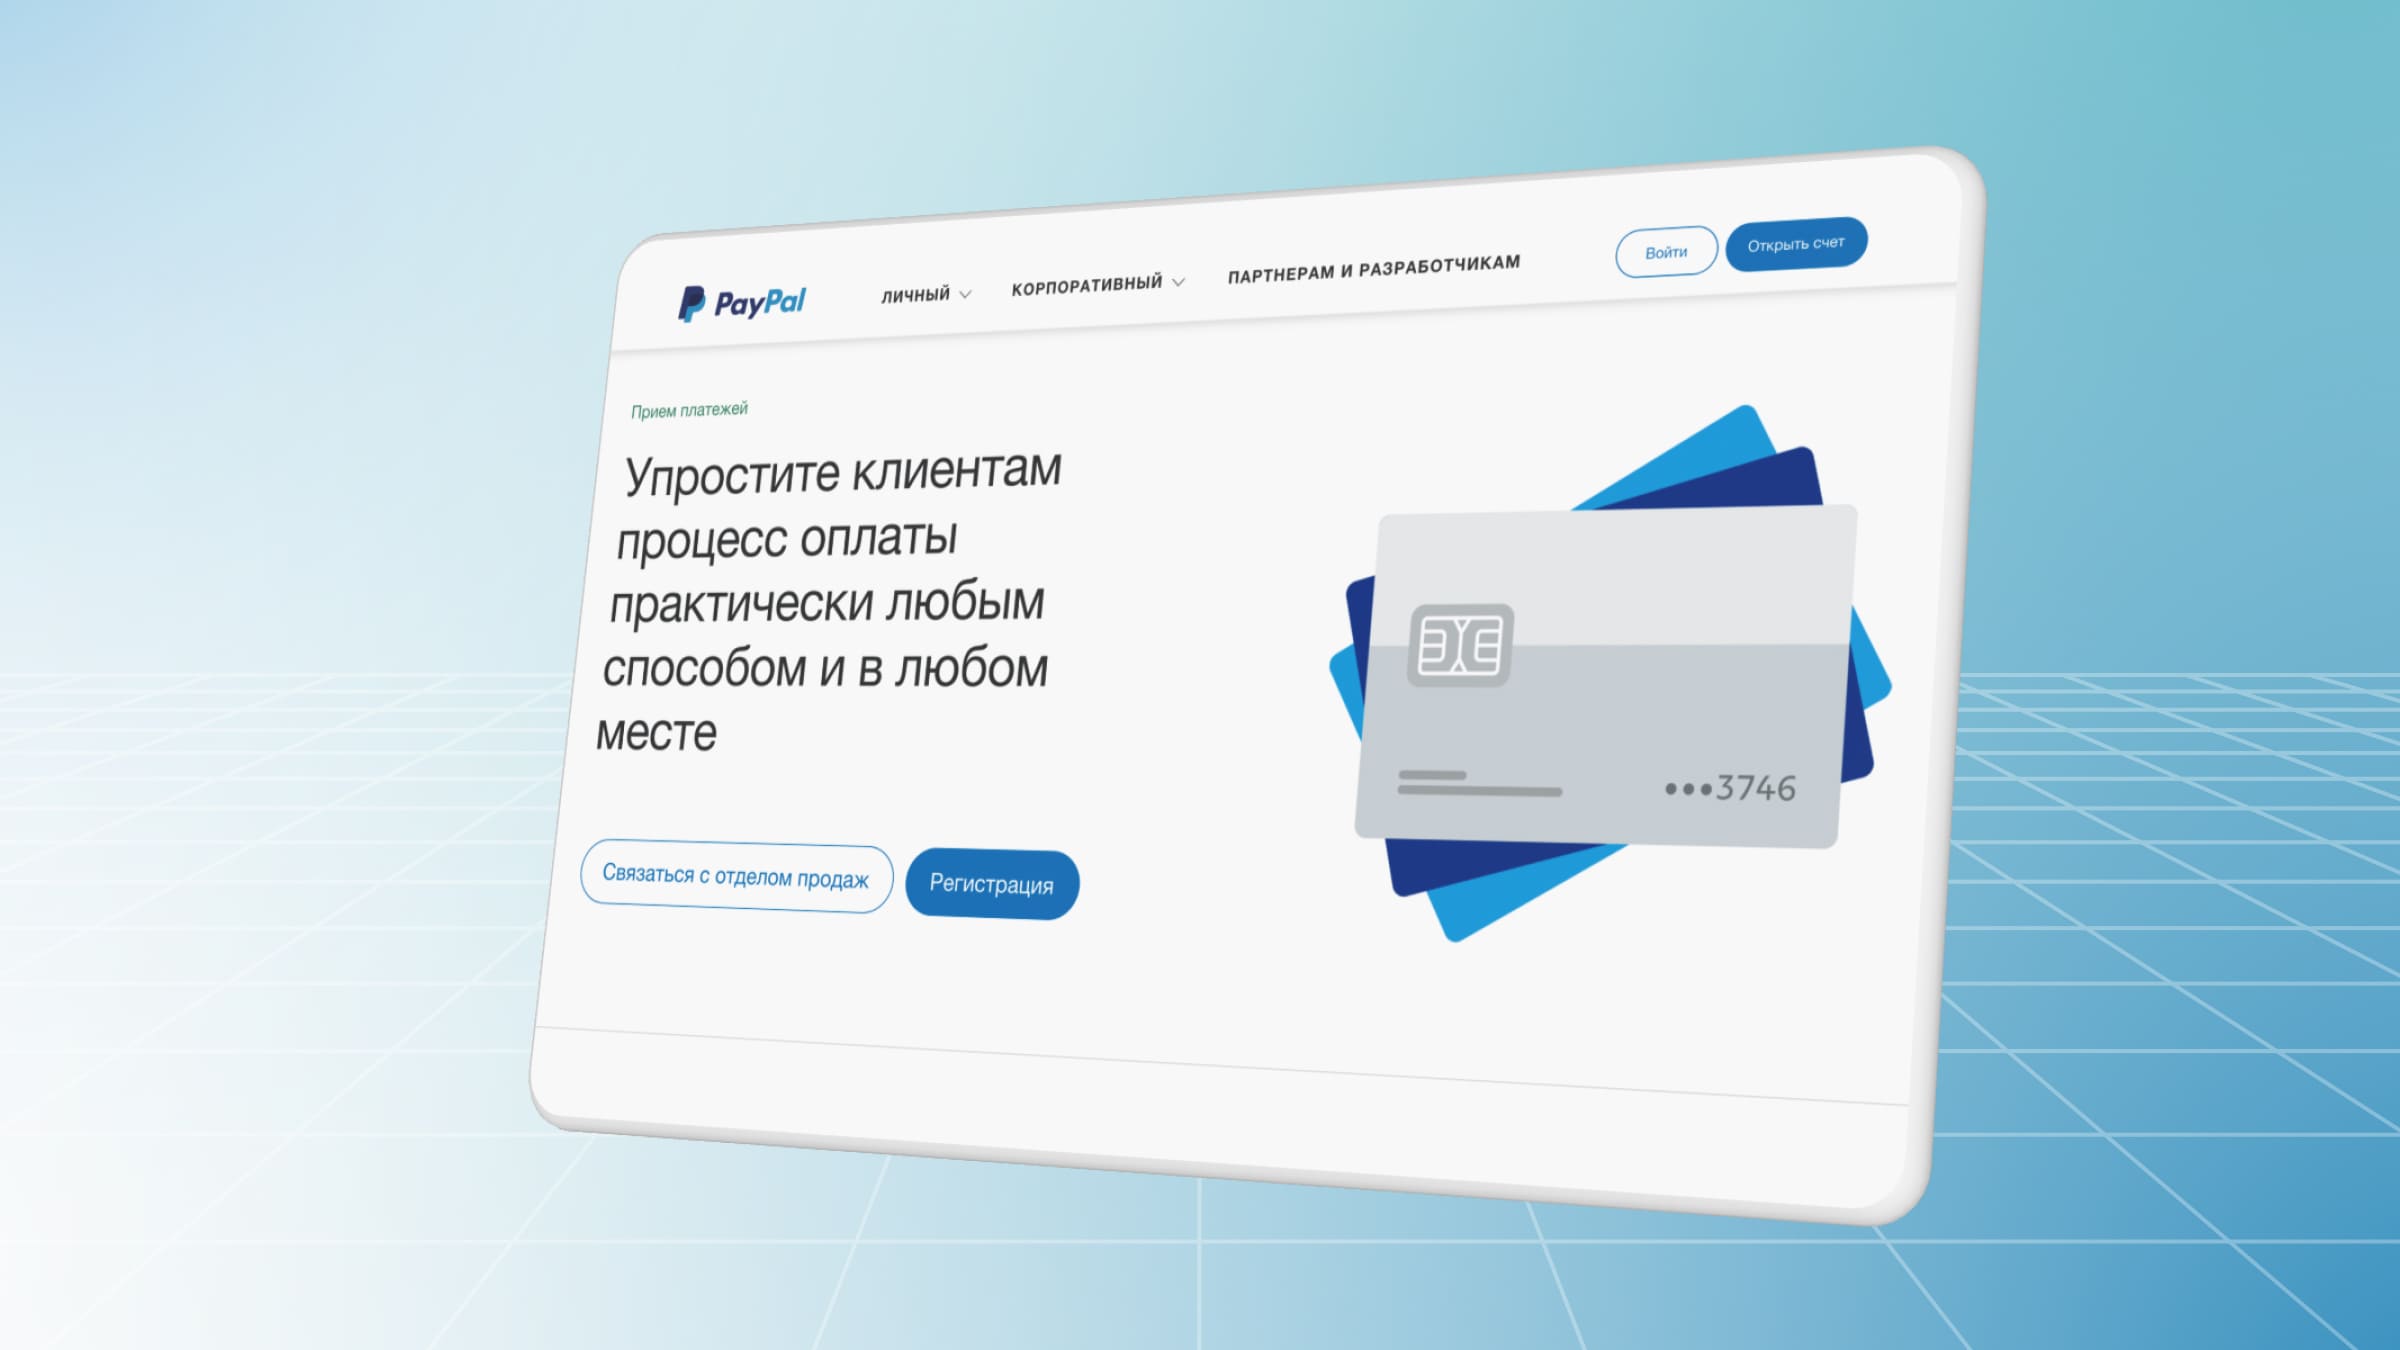 PayPal — известный и надежный сервис приема платежей, один из самых популярных в США.